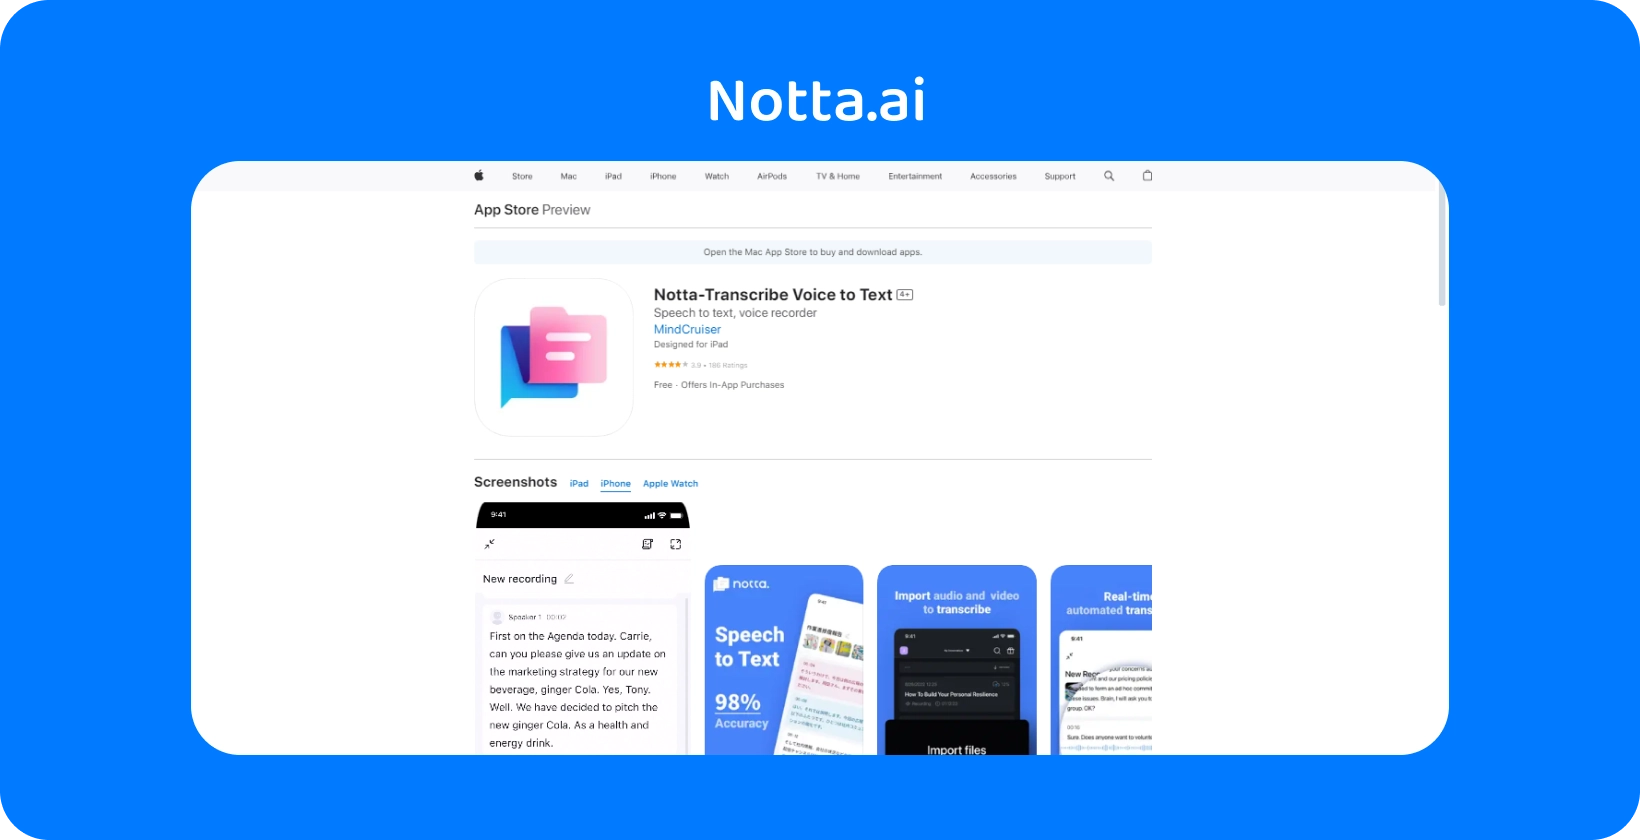 Pratinjau App Store Nota.ai dengan fitur-fitur baru untuk mengubah suara menjadi teks dengan akurasi AI dipamerkan.